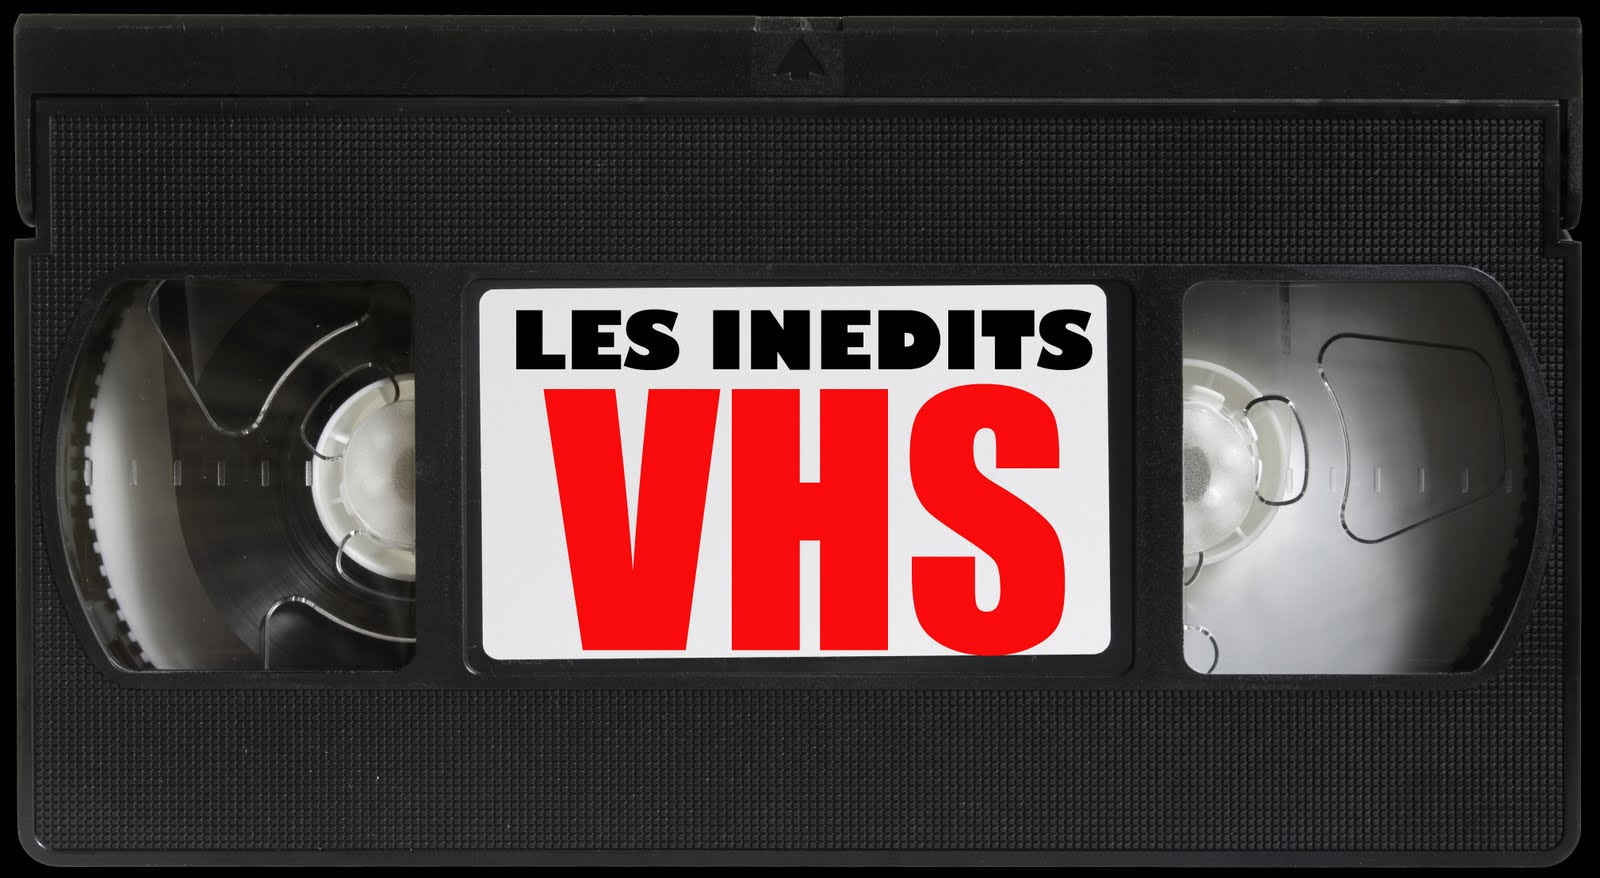 LES INEDITS VHS